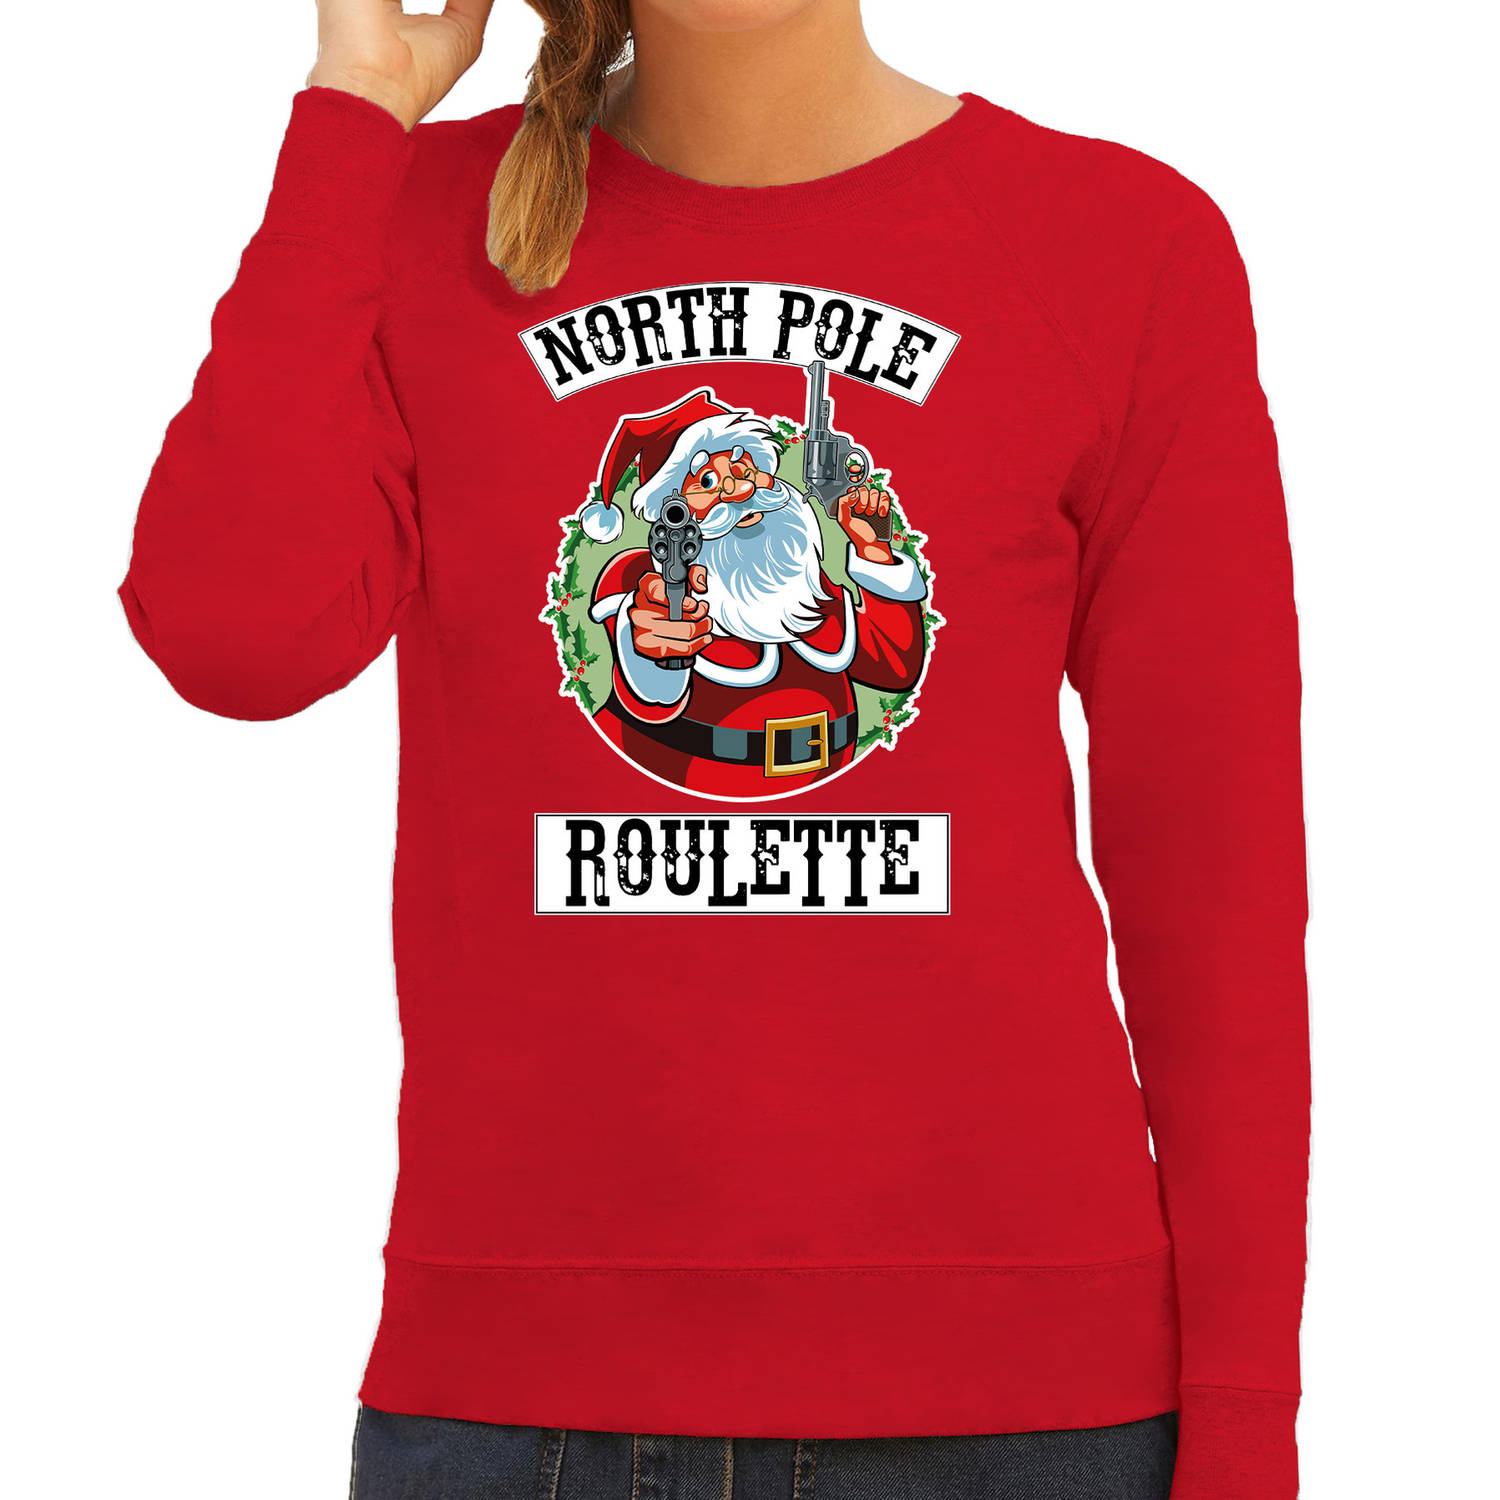 Rode Kersttrui / Kerstkleding Northpole roulette voor dames L - kerst truien